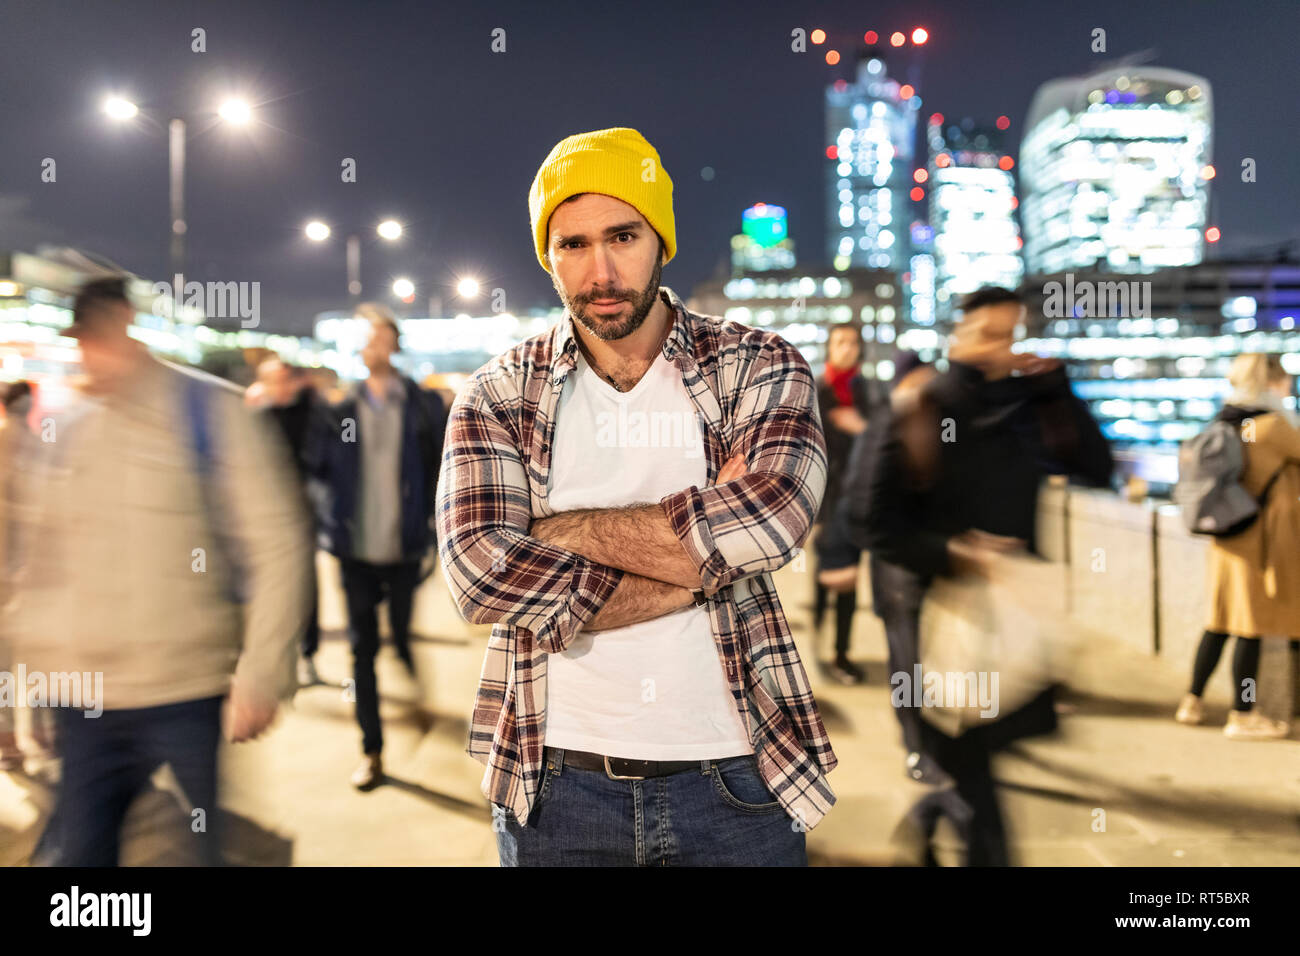 Reino Unido, Londres, el retrato de una persona por la noche con la gente borrosa que pasan cerca. Foto de stock